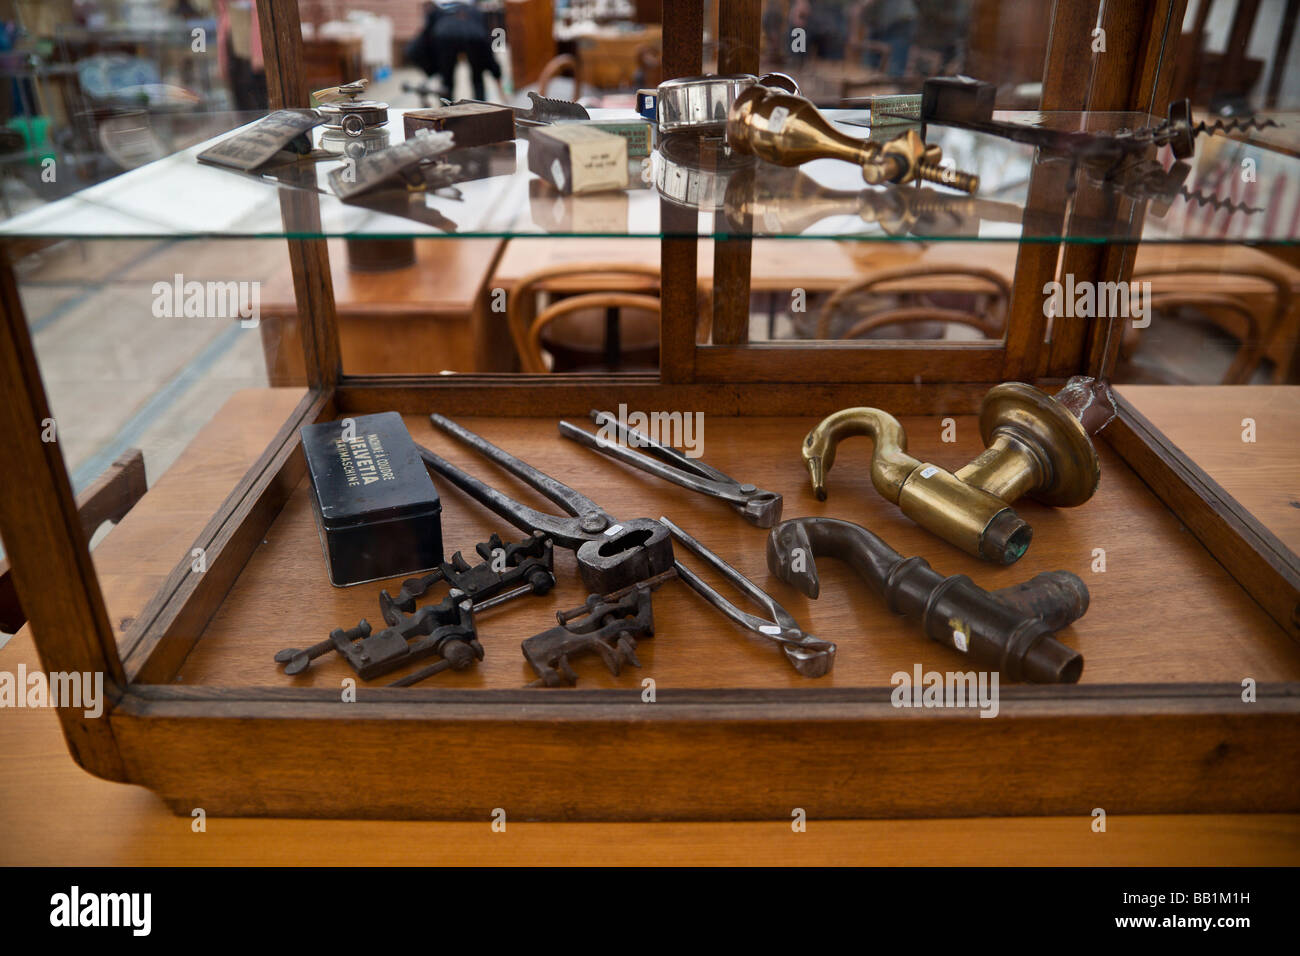 Antike Werkzeuge bei der Antiquitätenmarkt Neuchatel Schweiz  Stockfotografie - Alamy